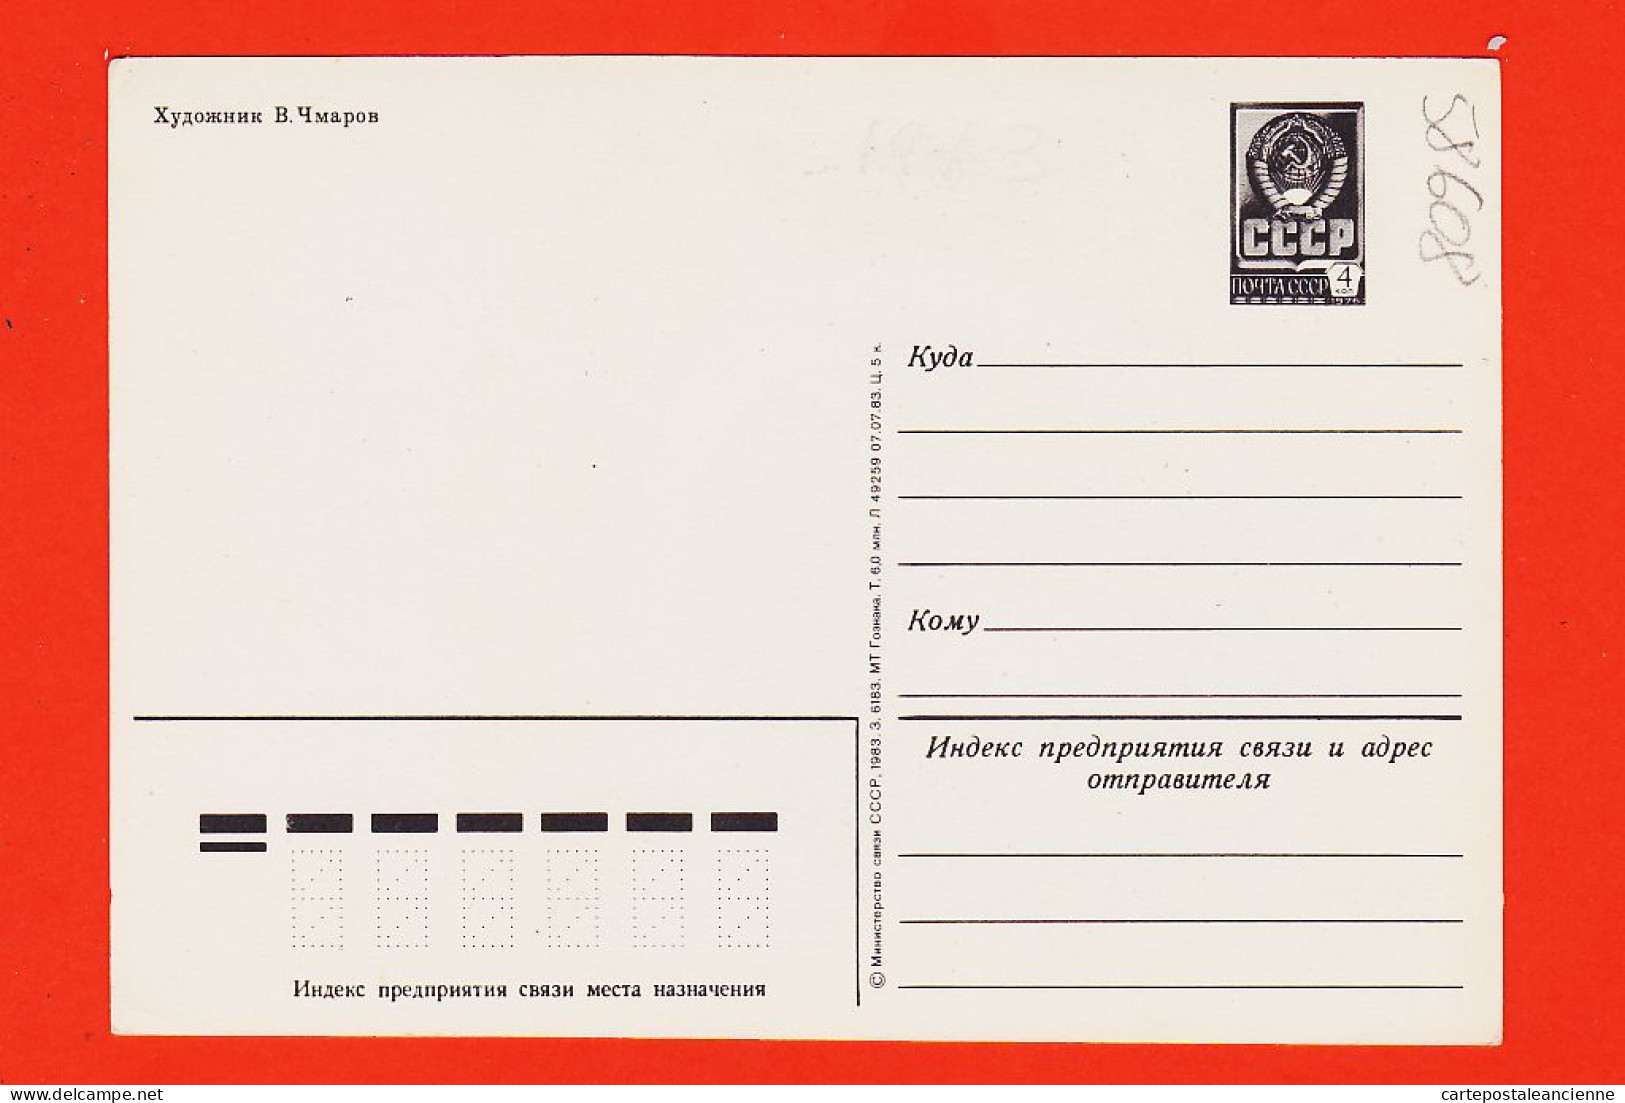 29387 / ⭐ Peu Commun URSS Patriotique Russie Communiste художник  B. Чмapoв  Symbole Faucille Marteau CCCP  - Partis Politiques & élections